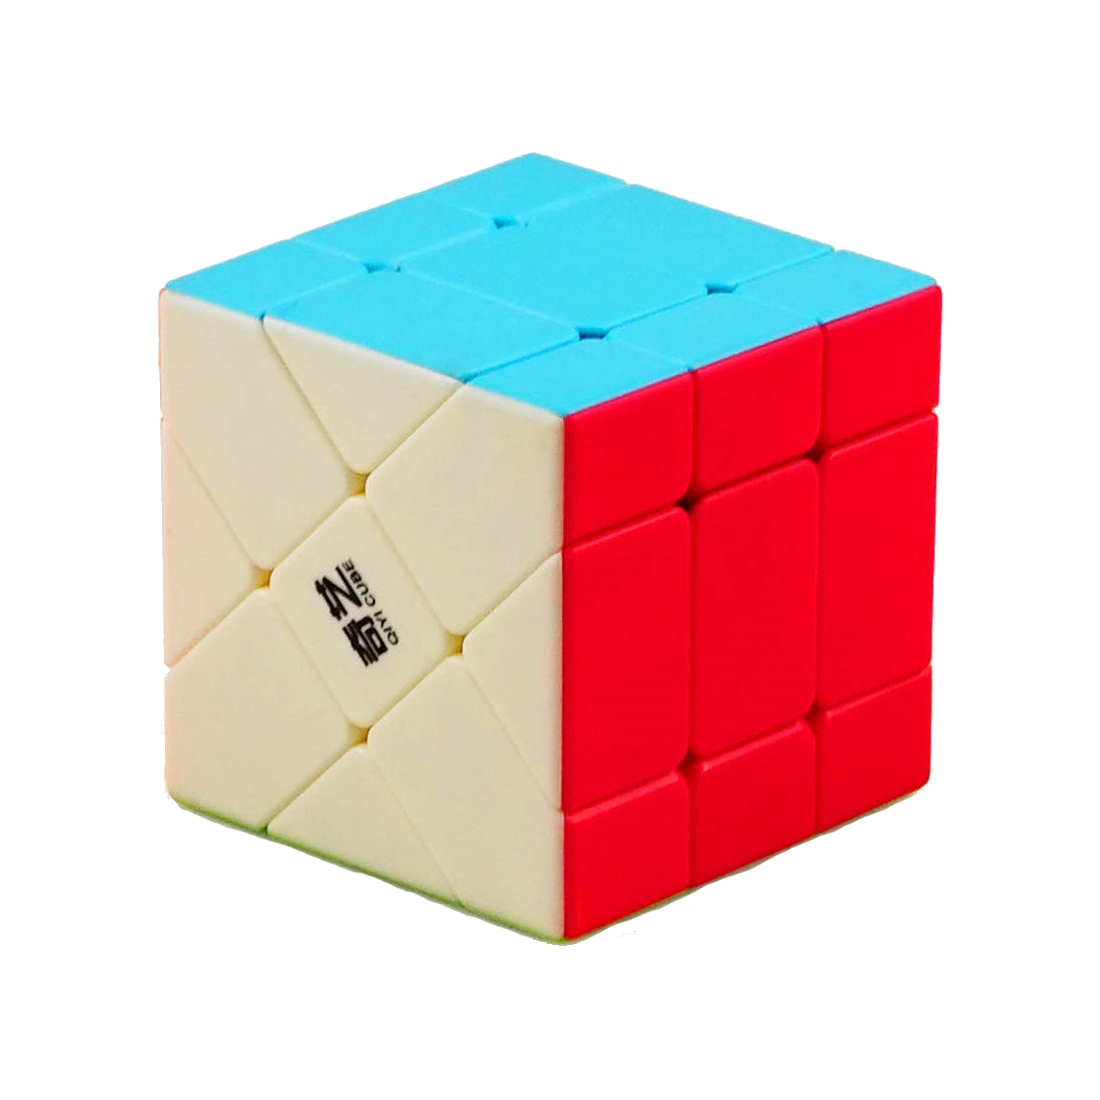 Yileng Fisher Cube